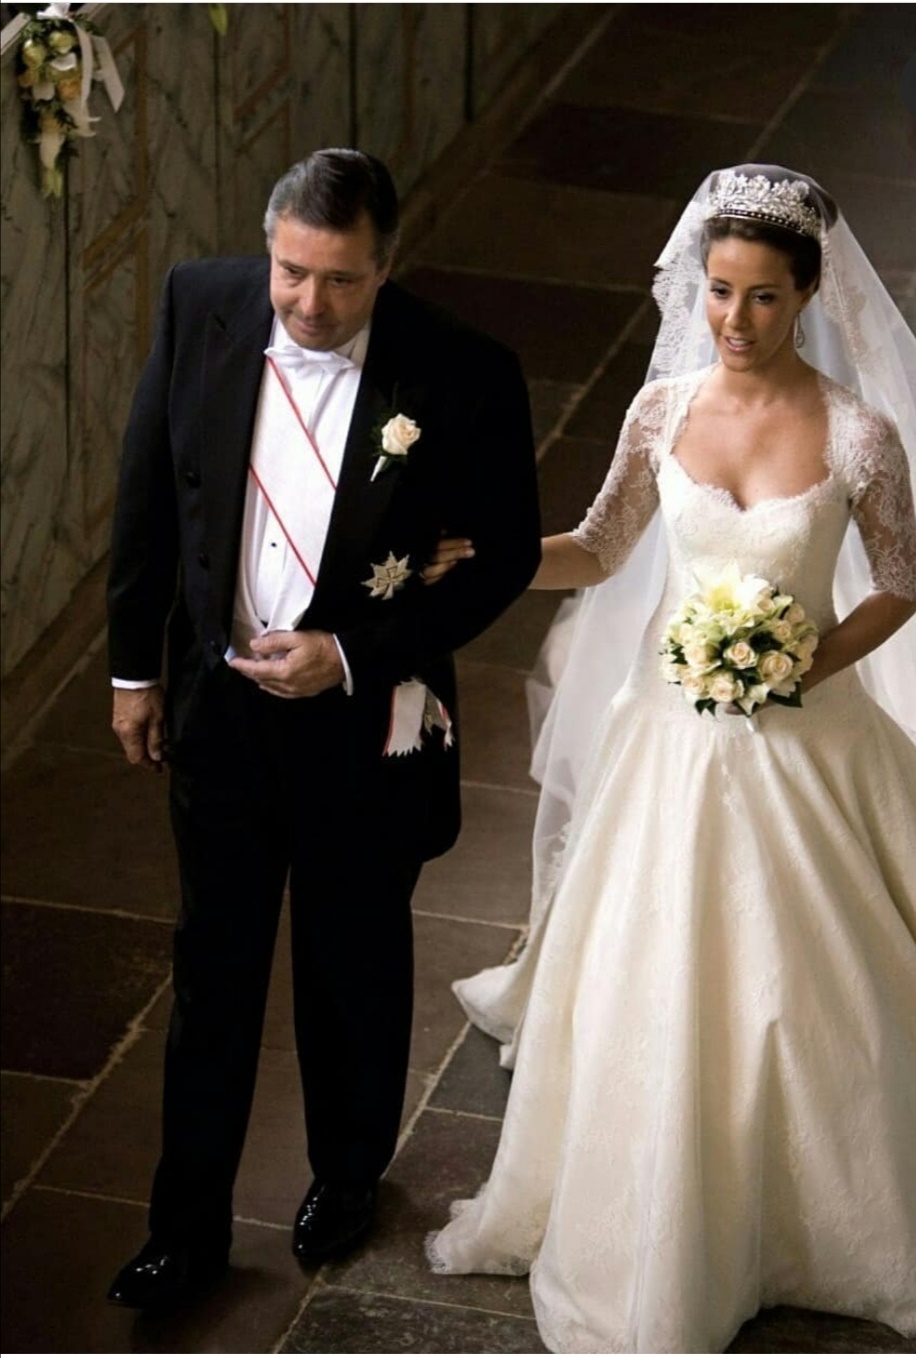 العروس في الممر على ذراع والدها آلان كافاليير- الصورة من حساب Royal Denmark على إنستغرام